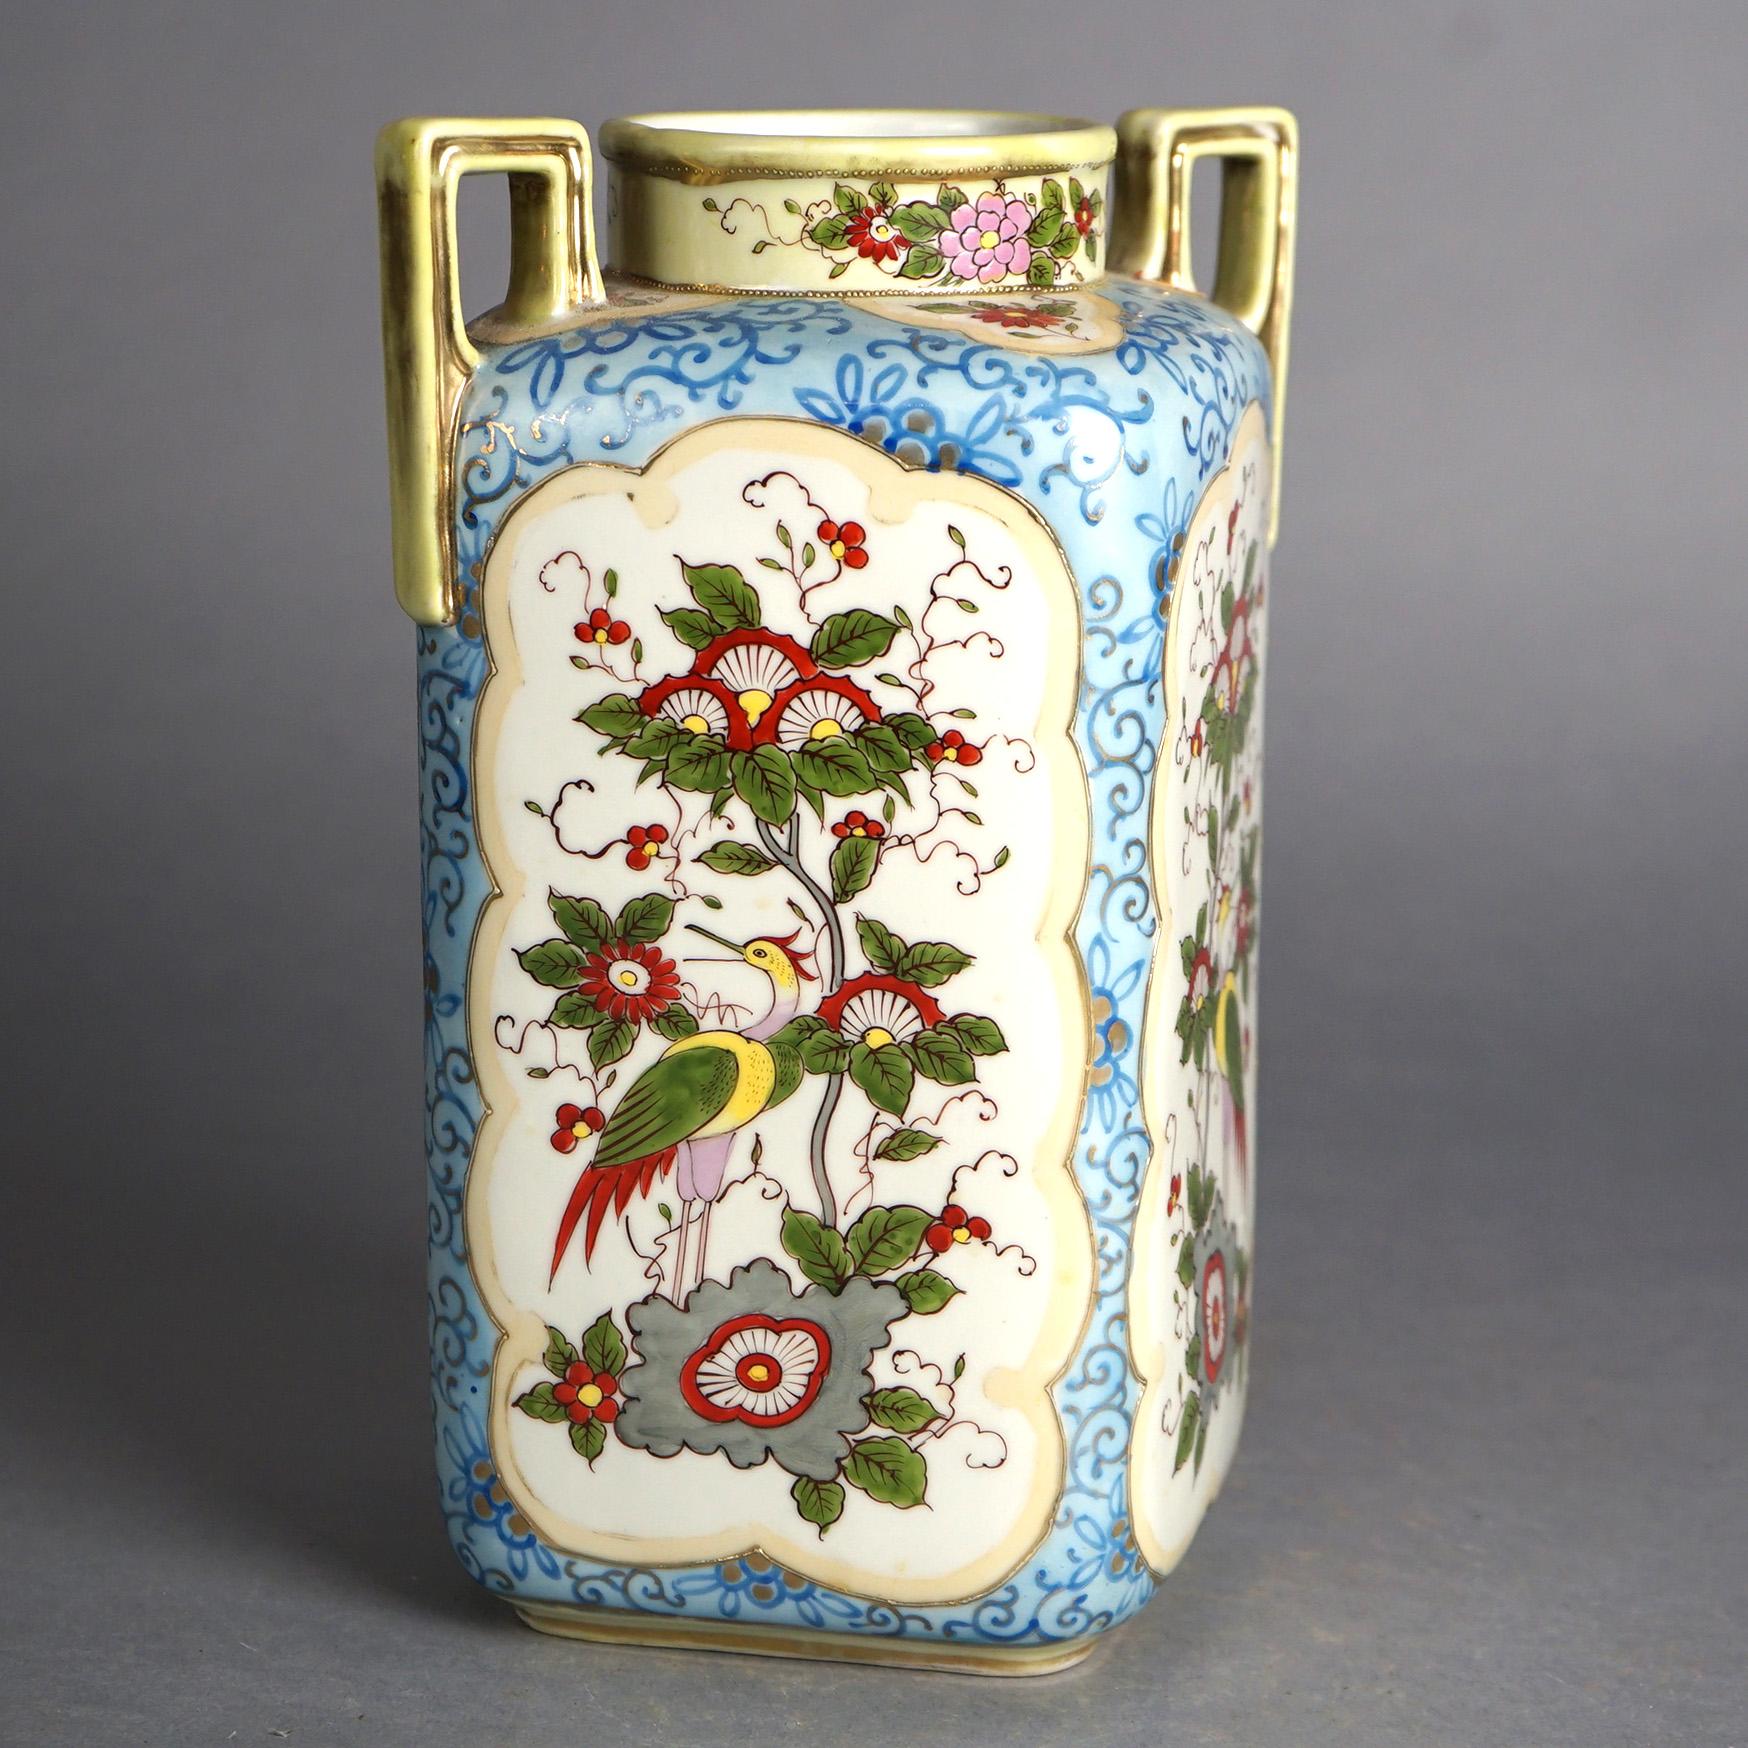 Antique vase à double poignée en porcelaine peint à la main de Nippon à motifs floraux, vers 1920

Dimensions : 10,75''H x 7,5''L x 5,75''P